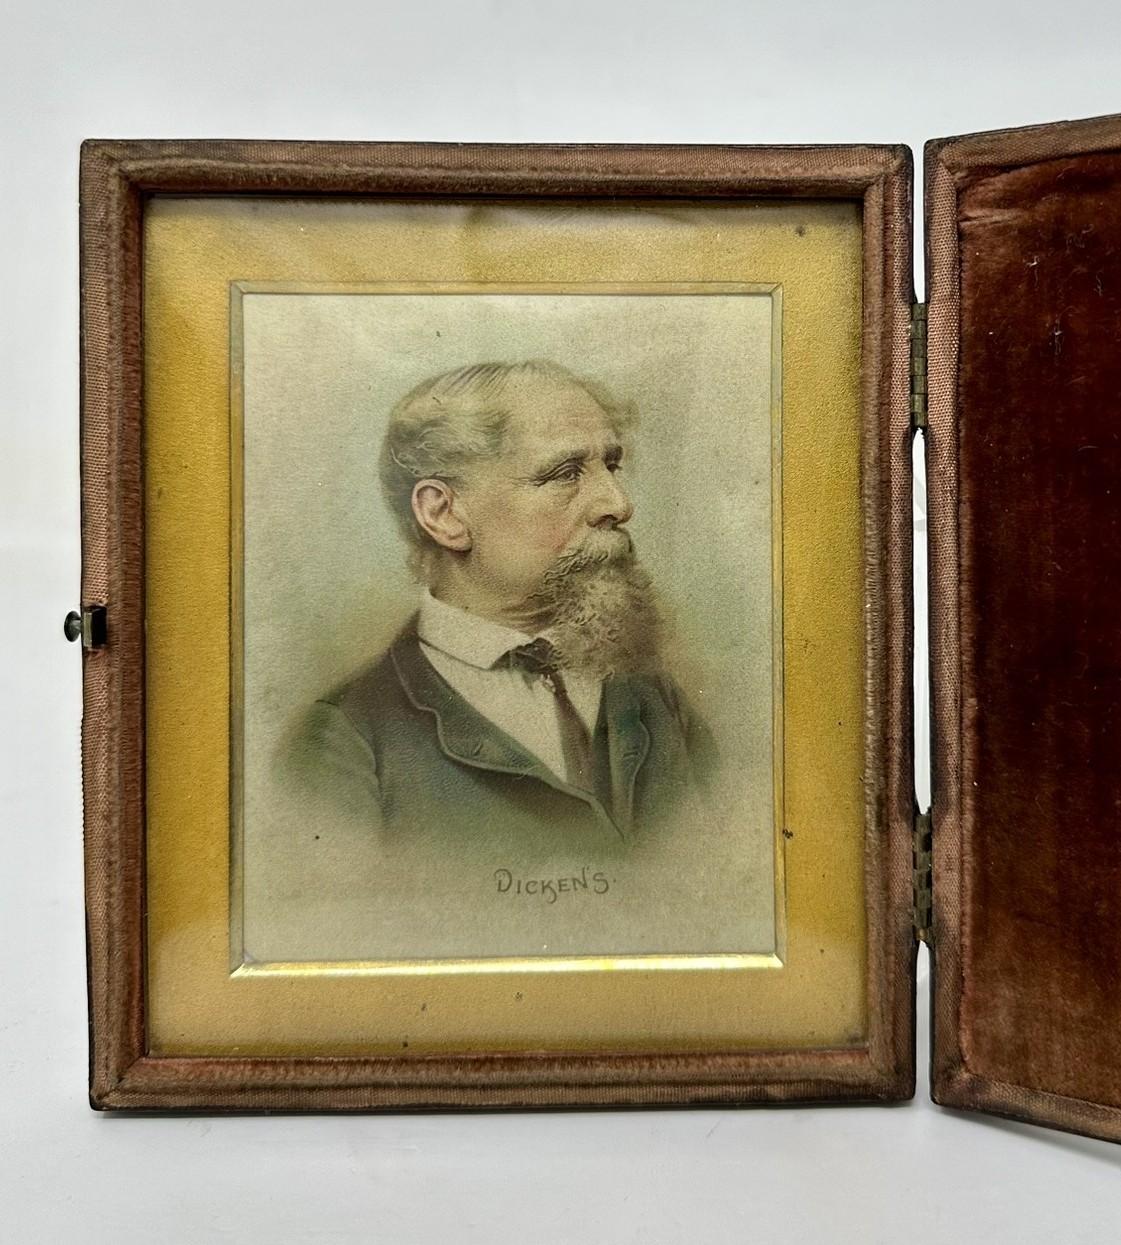  Antigua miniatura inglesa en acuarela Retrato masculino de Charles Dickens 1812-1870 Británico en venta